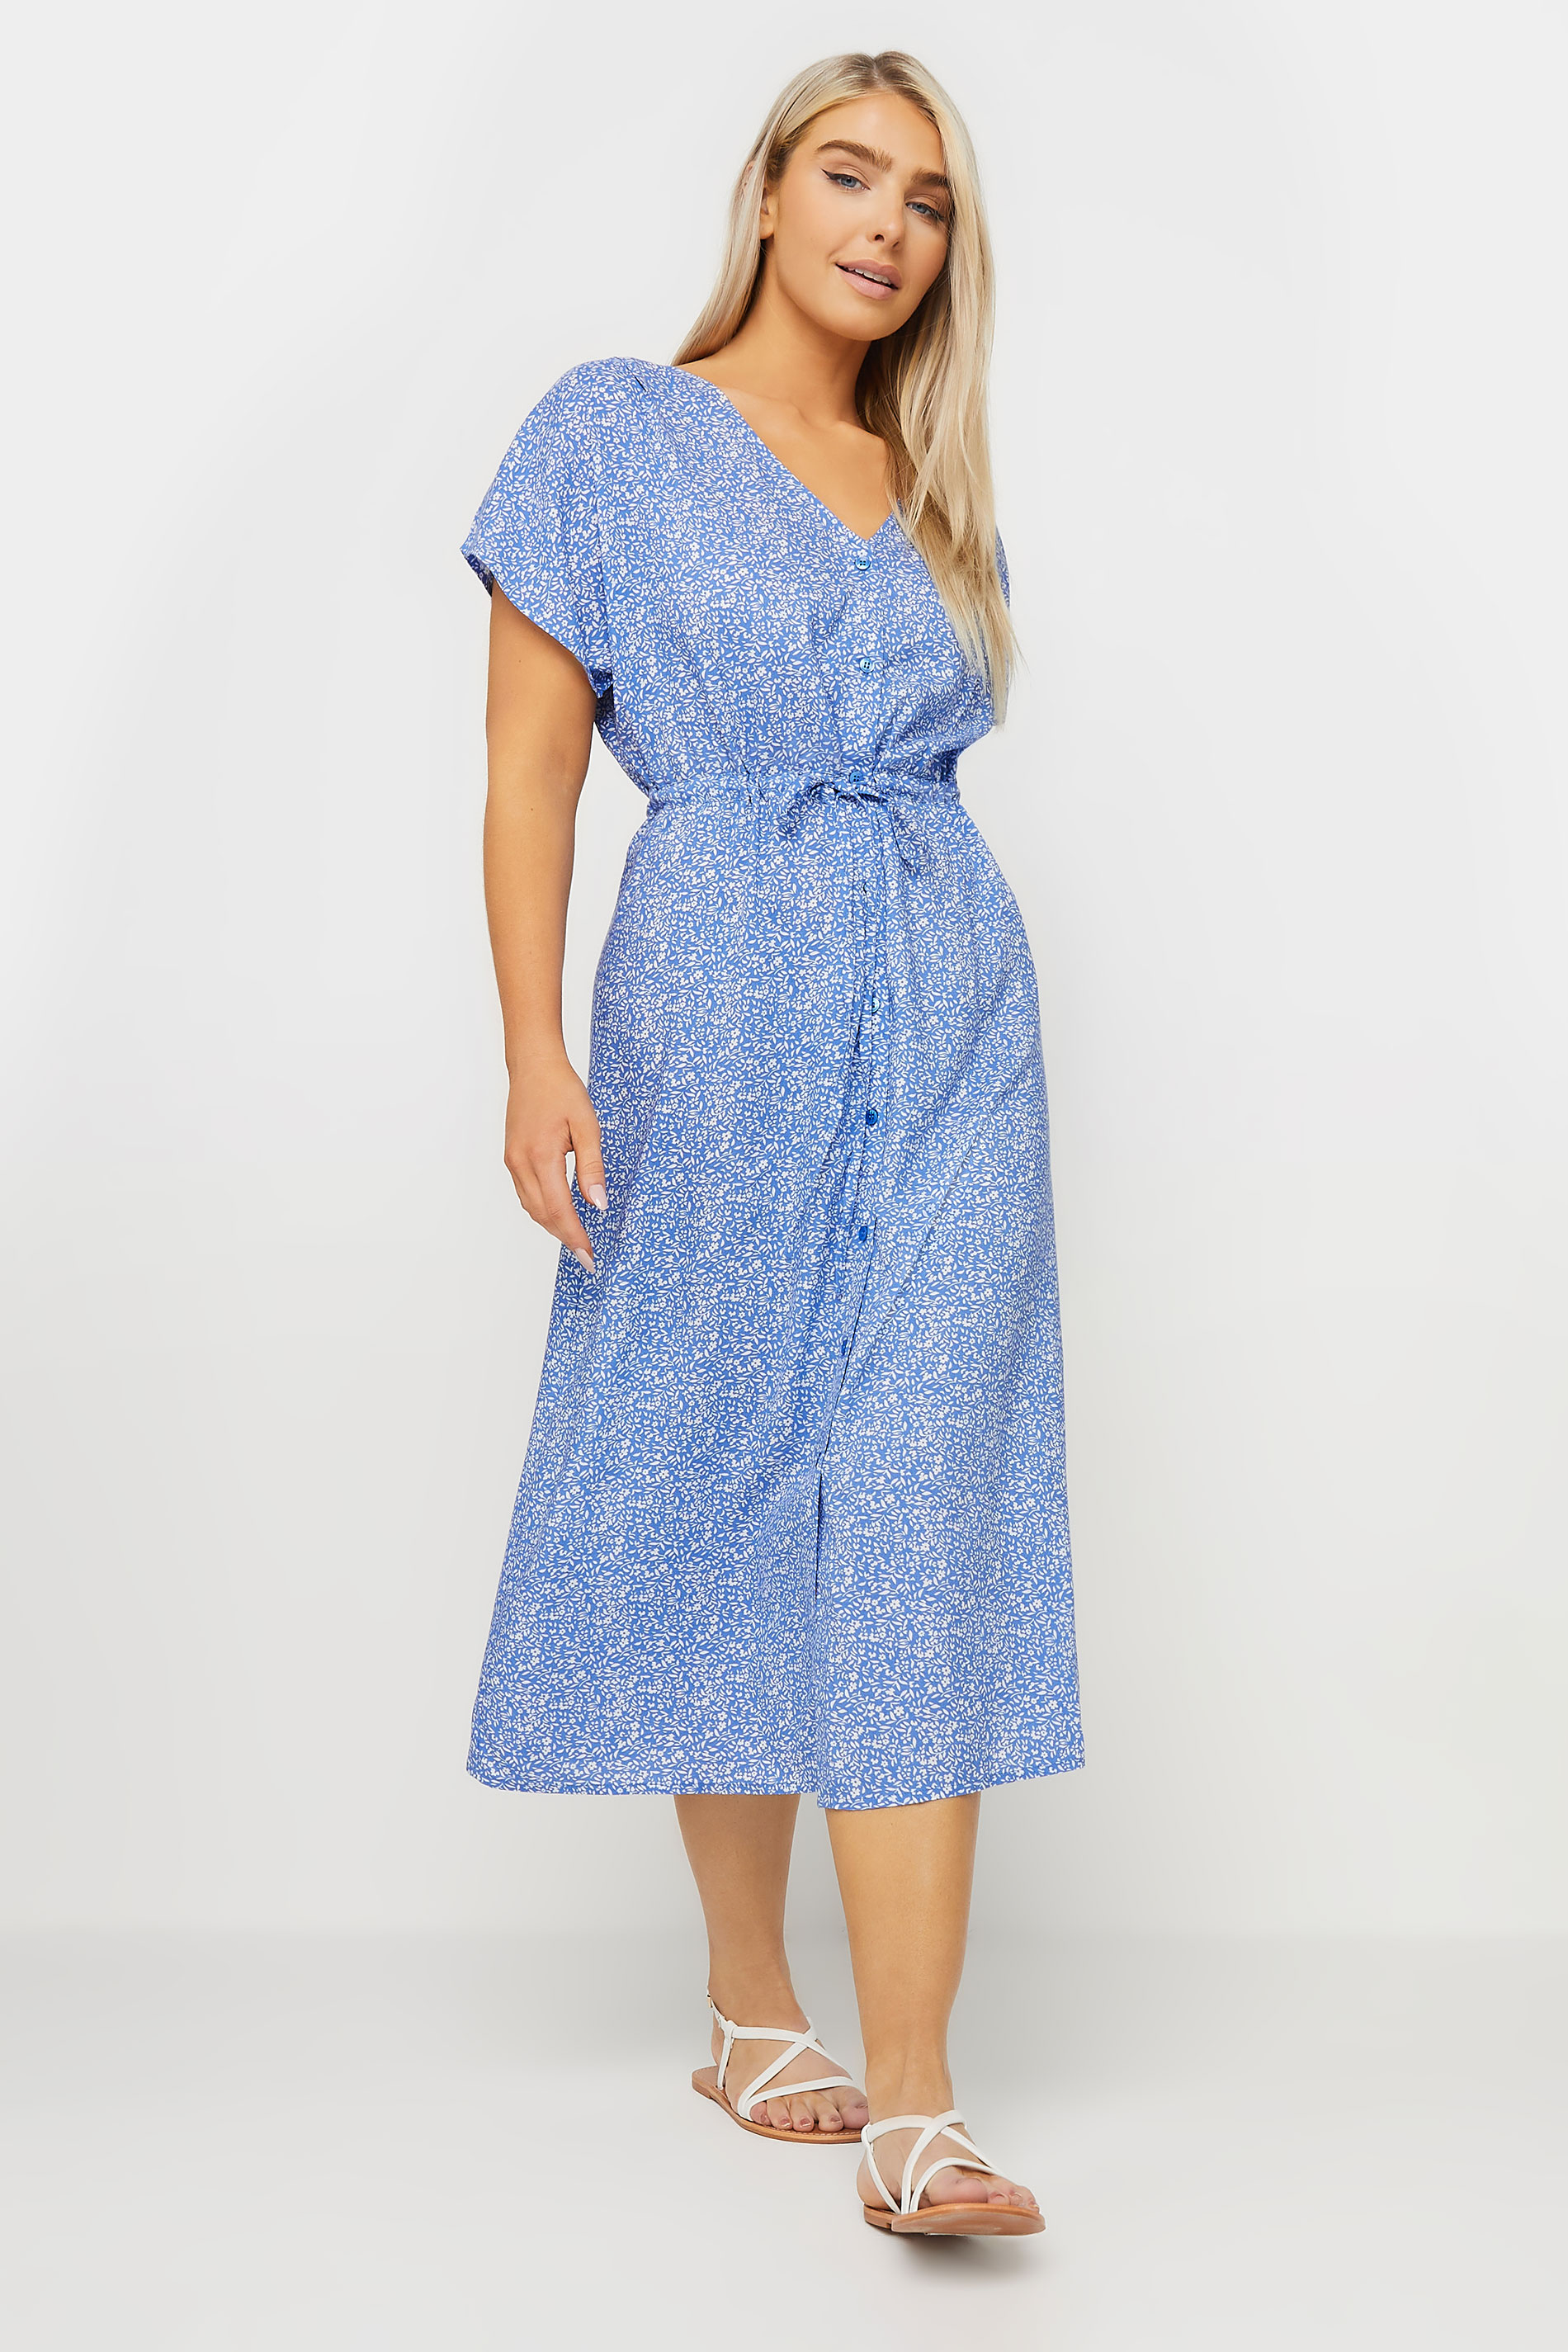 M&Co Blue Ditsy Floral Tie Waist Dress | M&Co 2